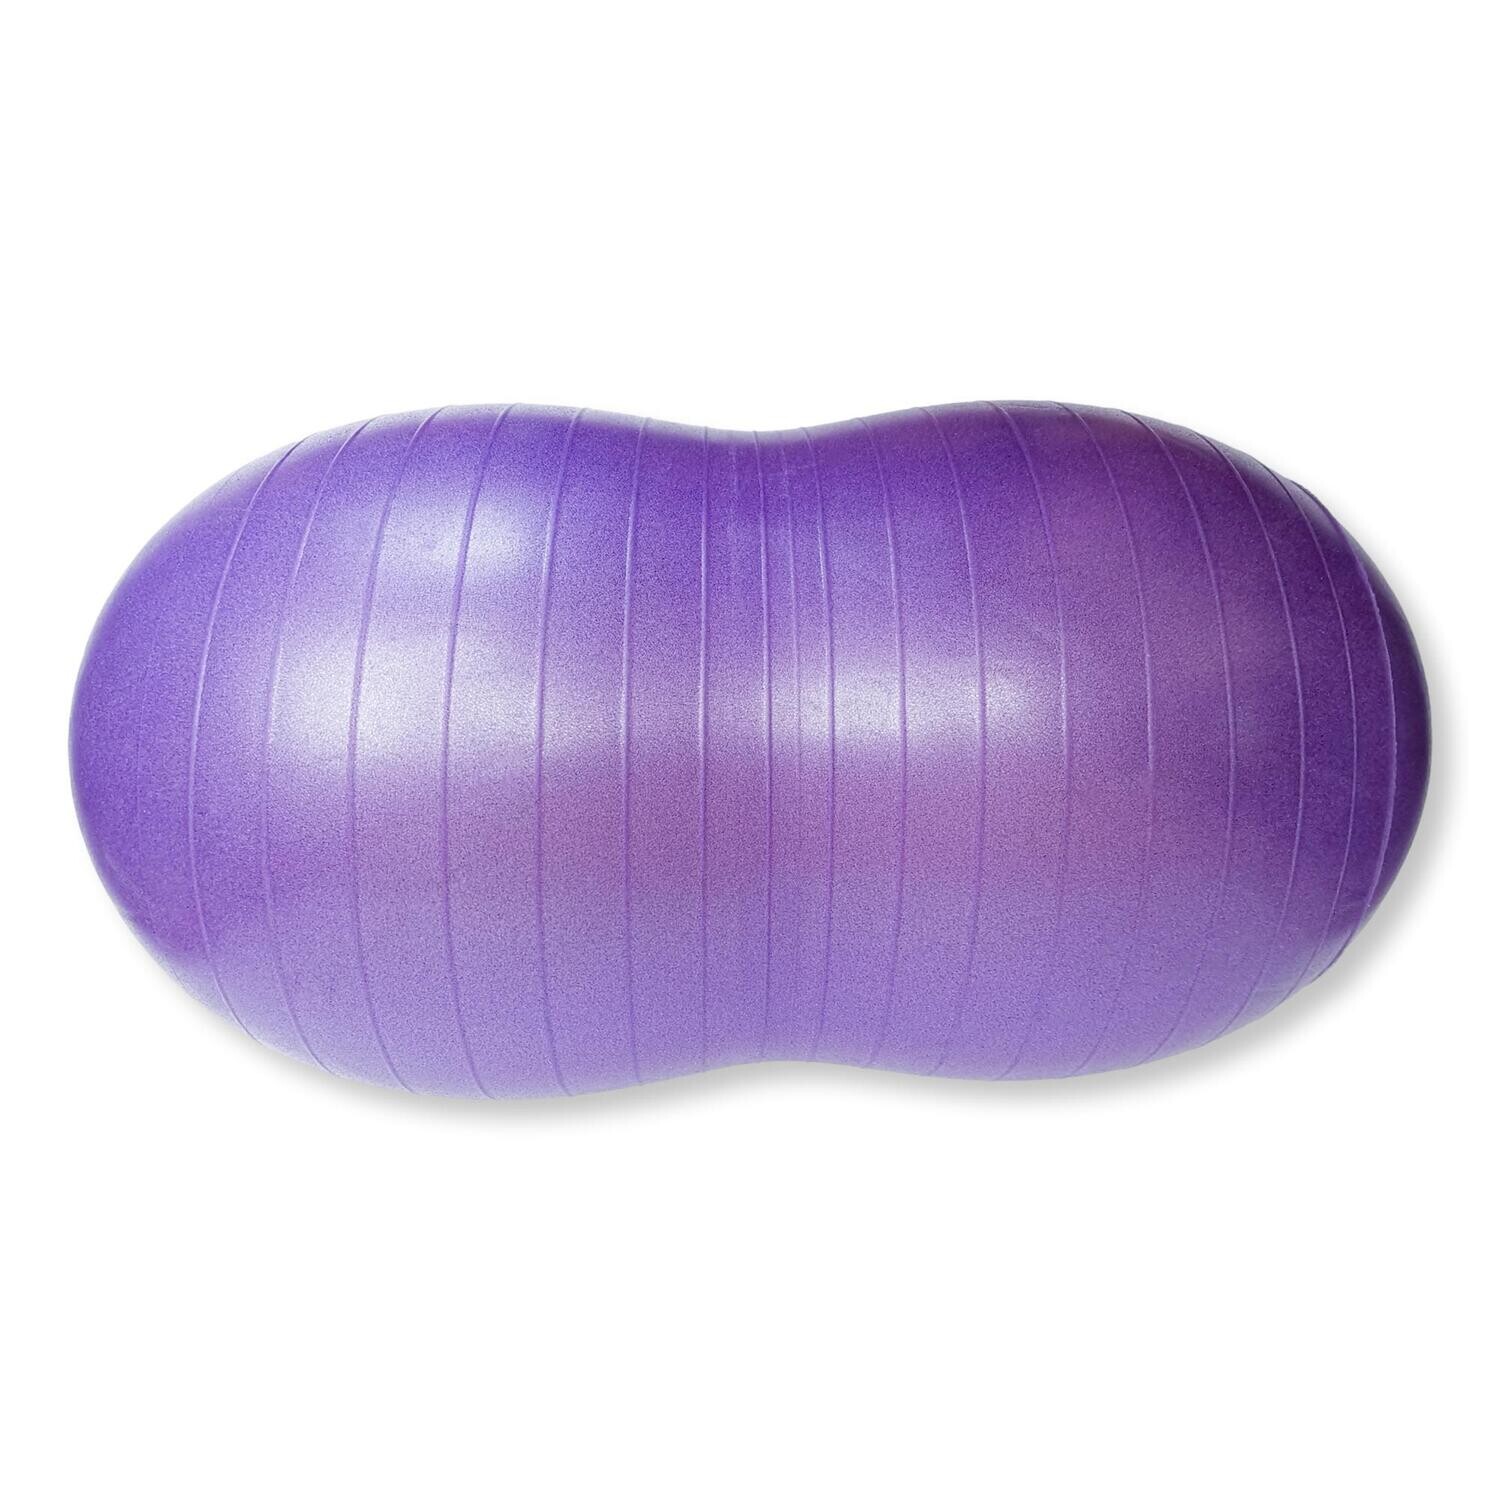 Balon con forma de maní